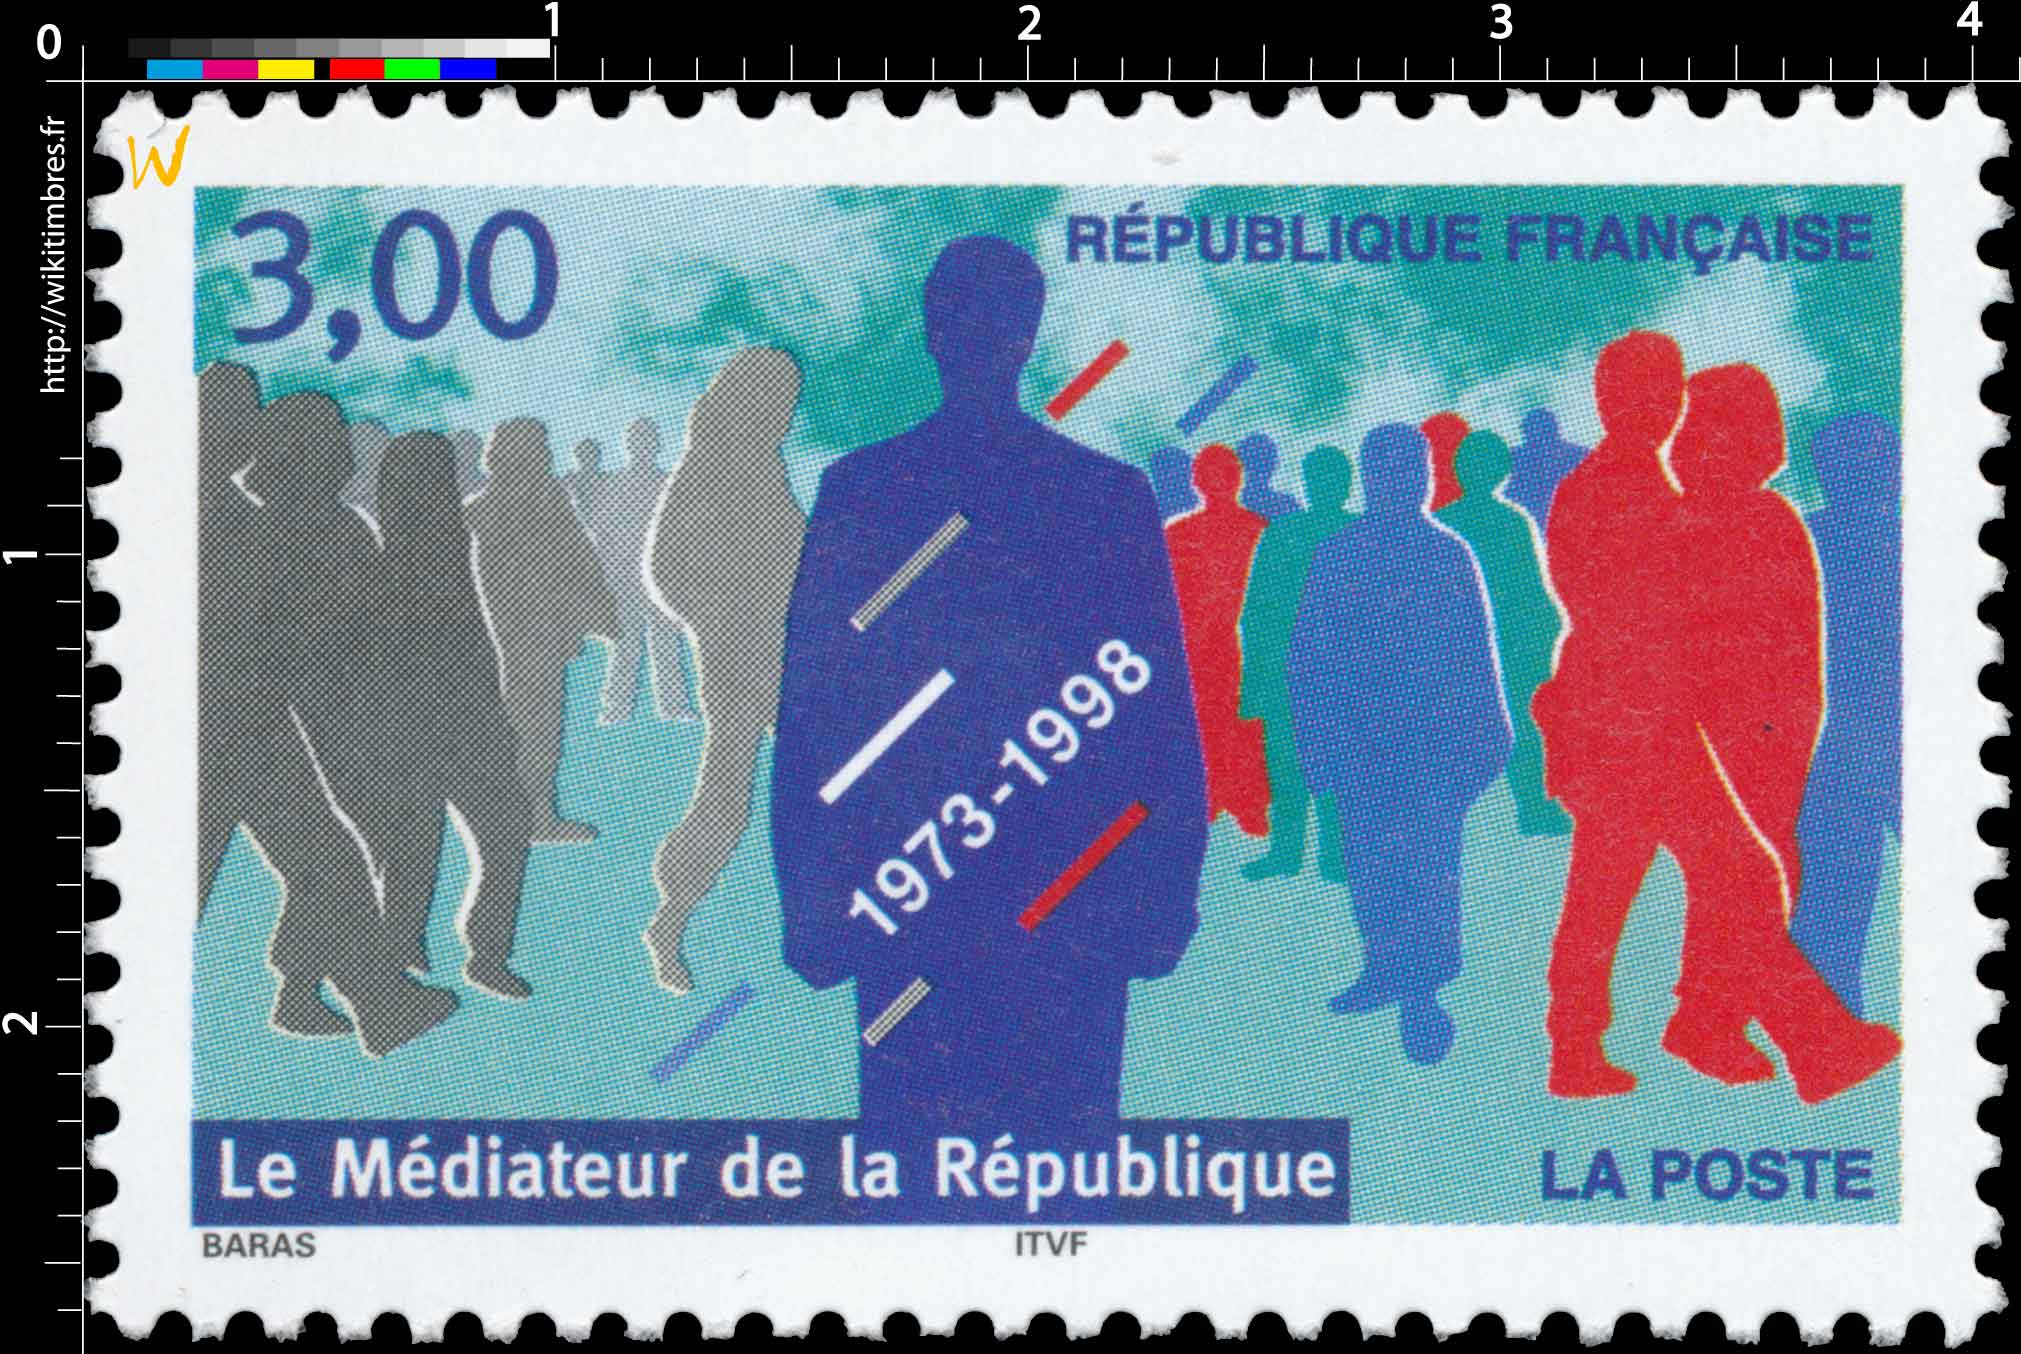 Le Médiateur de la République 1973-1998